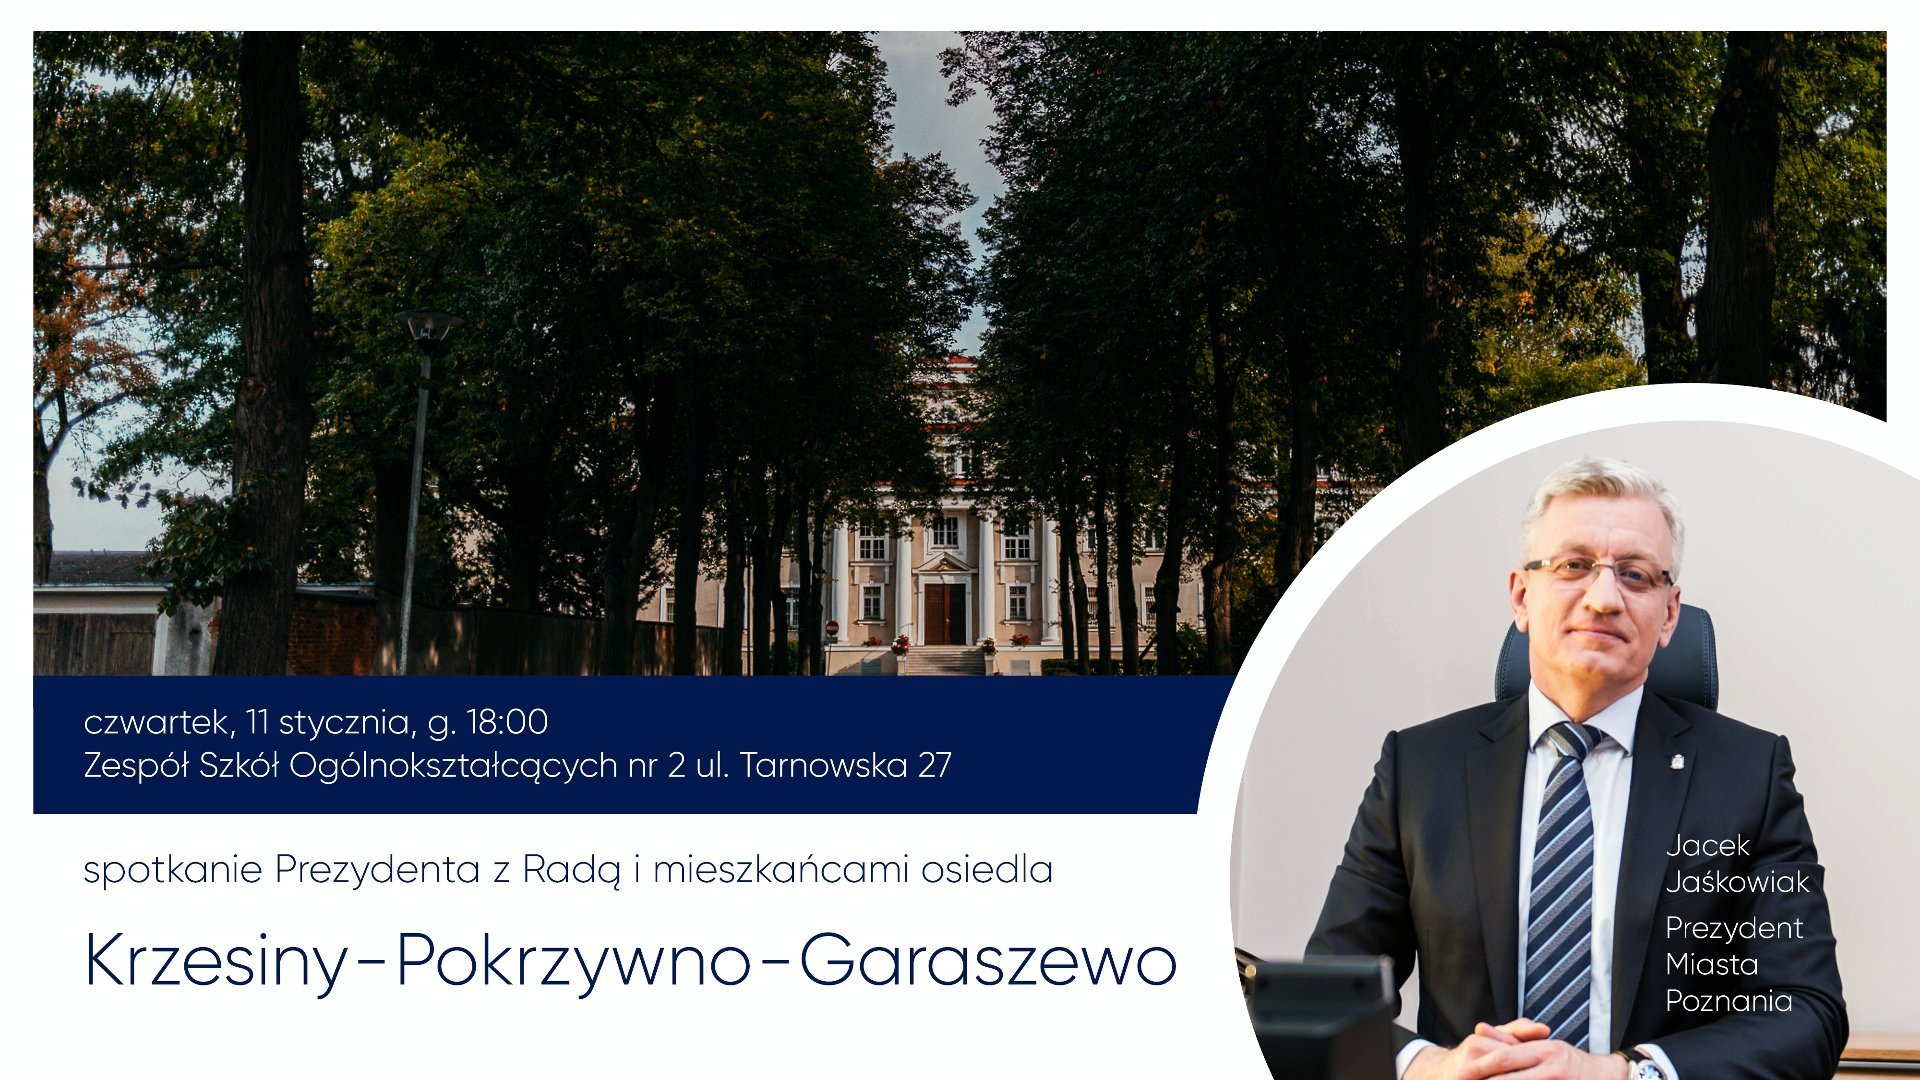 Zdjęcie przedstawia grafikę ze zdjęciem Jacka Jaśkowiaka, prezydetna Poznania i najważniejszymi informacjami dotyczącymi spotkania z mieszkańcami osiedla Krzesiny-Pokrzywno-Garaszewo.